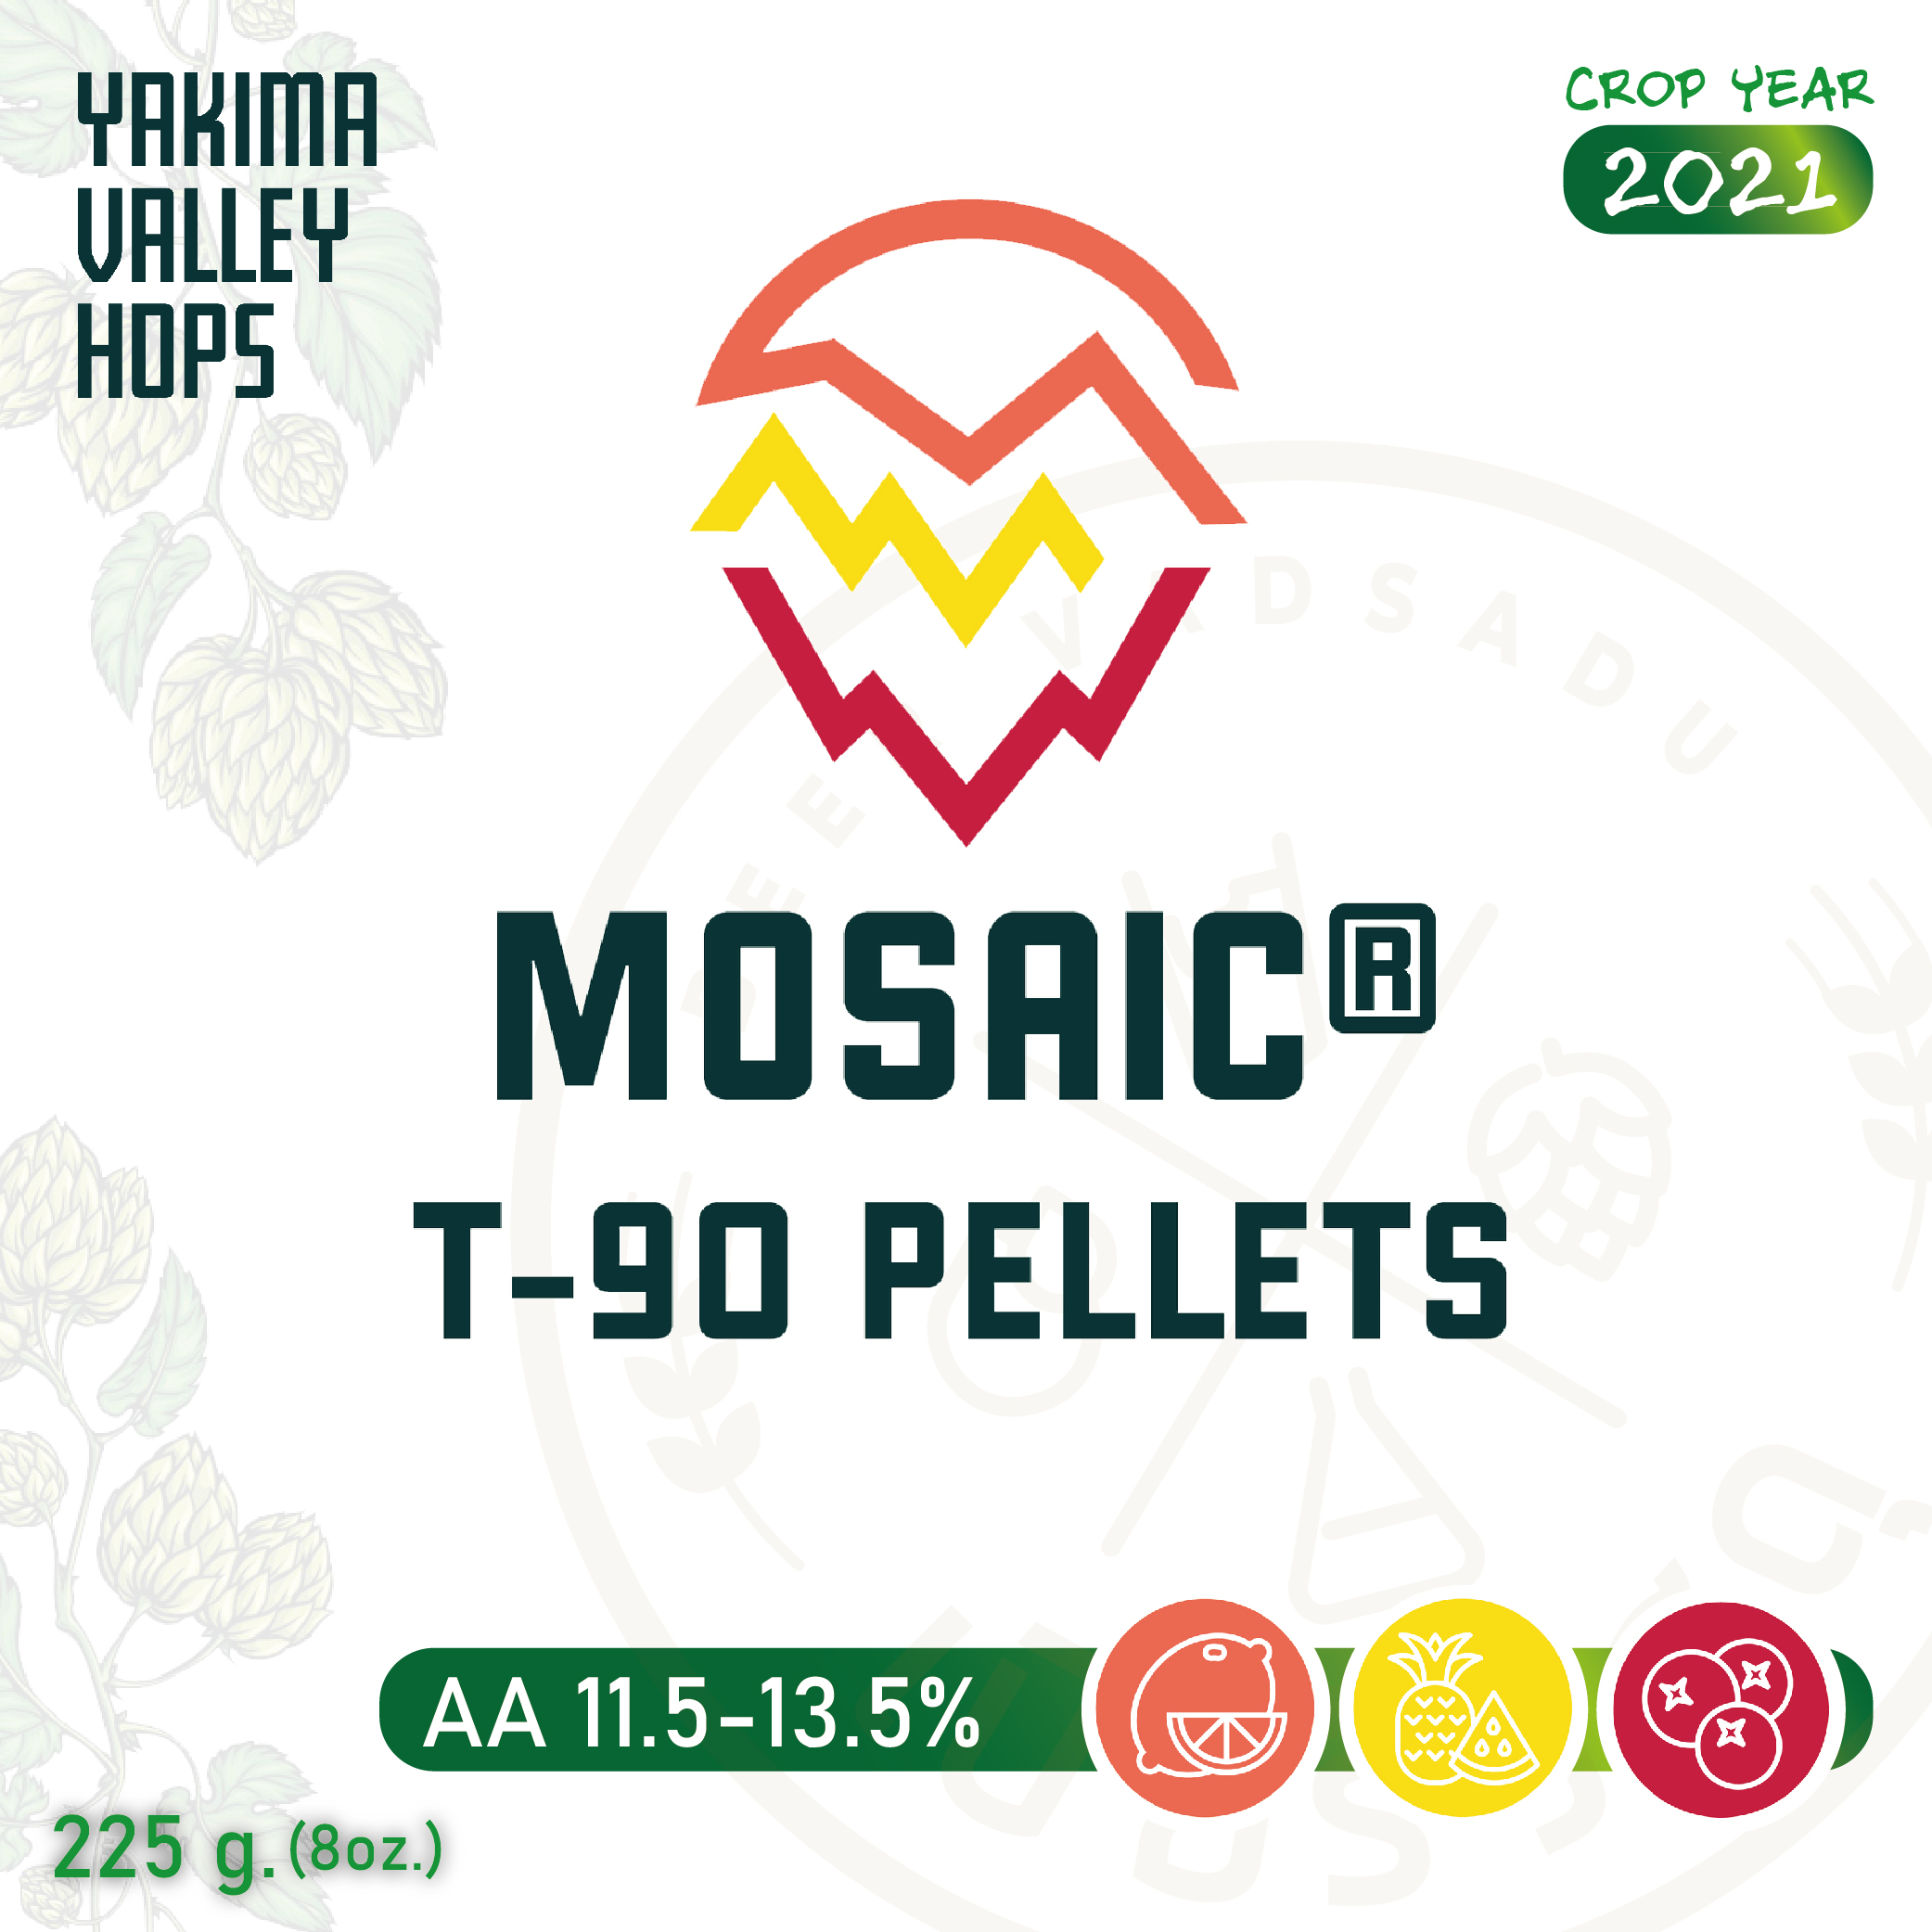 ฮอปทำเบียร์ Mosaic  8 oz